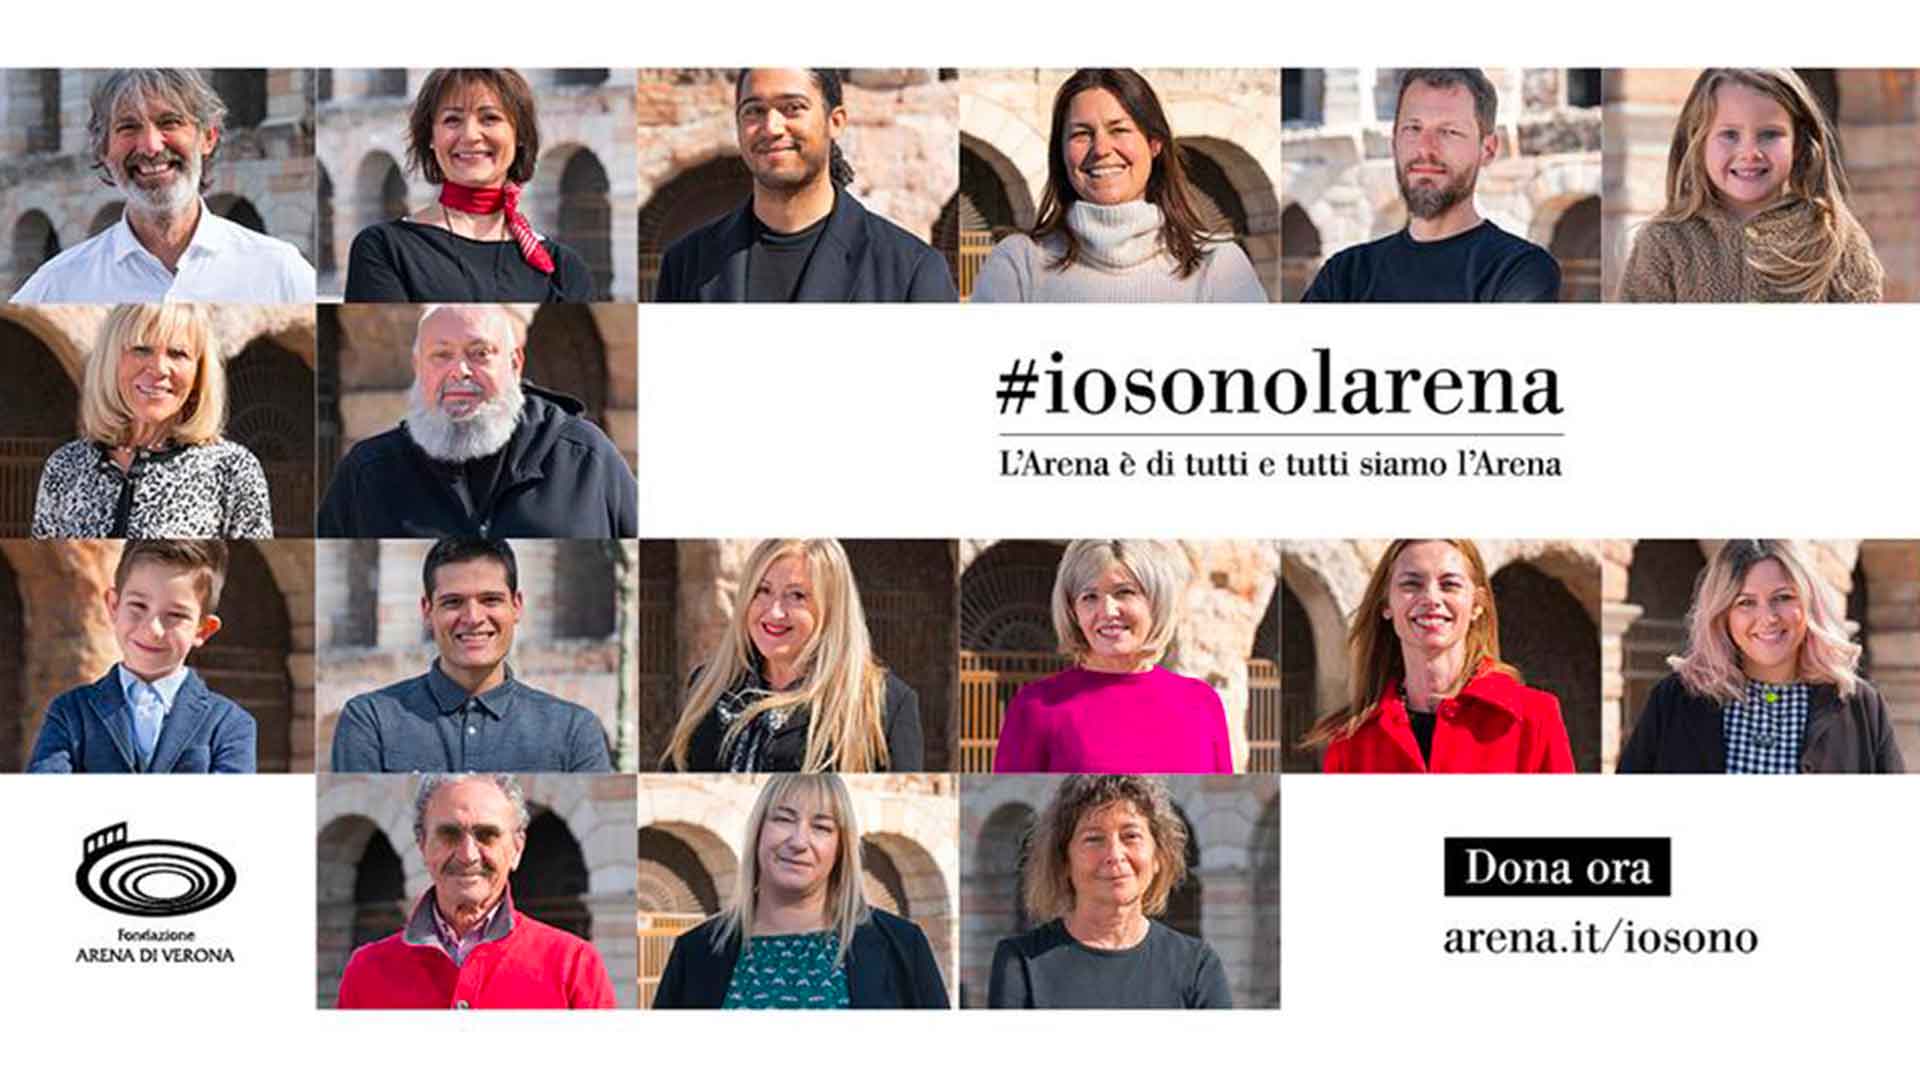 INIZIATIVA – Confartigianato adotta una delle 67 colonne dell'Arena di Verona. Al via la campagna #iosonolarena: donazione libera per cittadini e Associati. Giovedì 13 maggio presentazione on-line